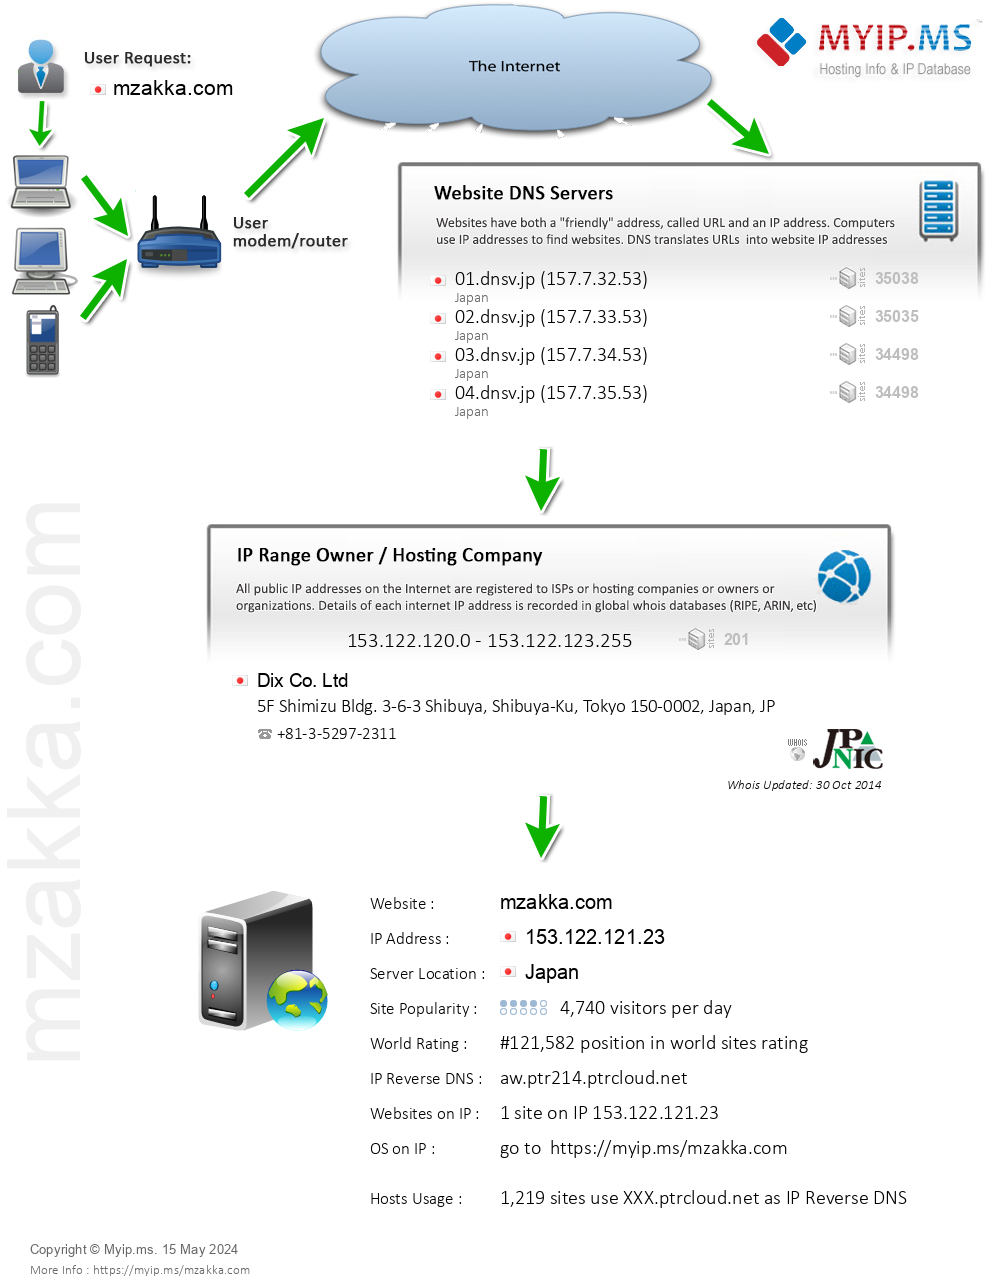 Mzakka.com - Website Hosting Visual IP Diagram